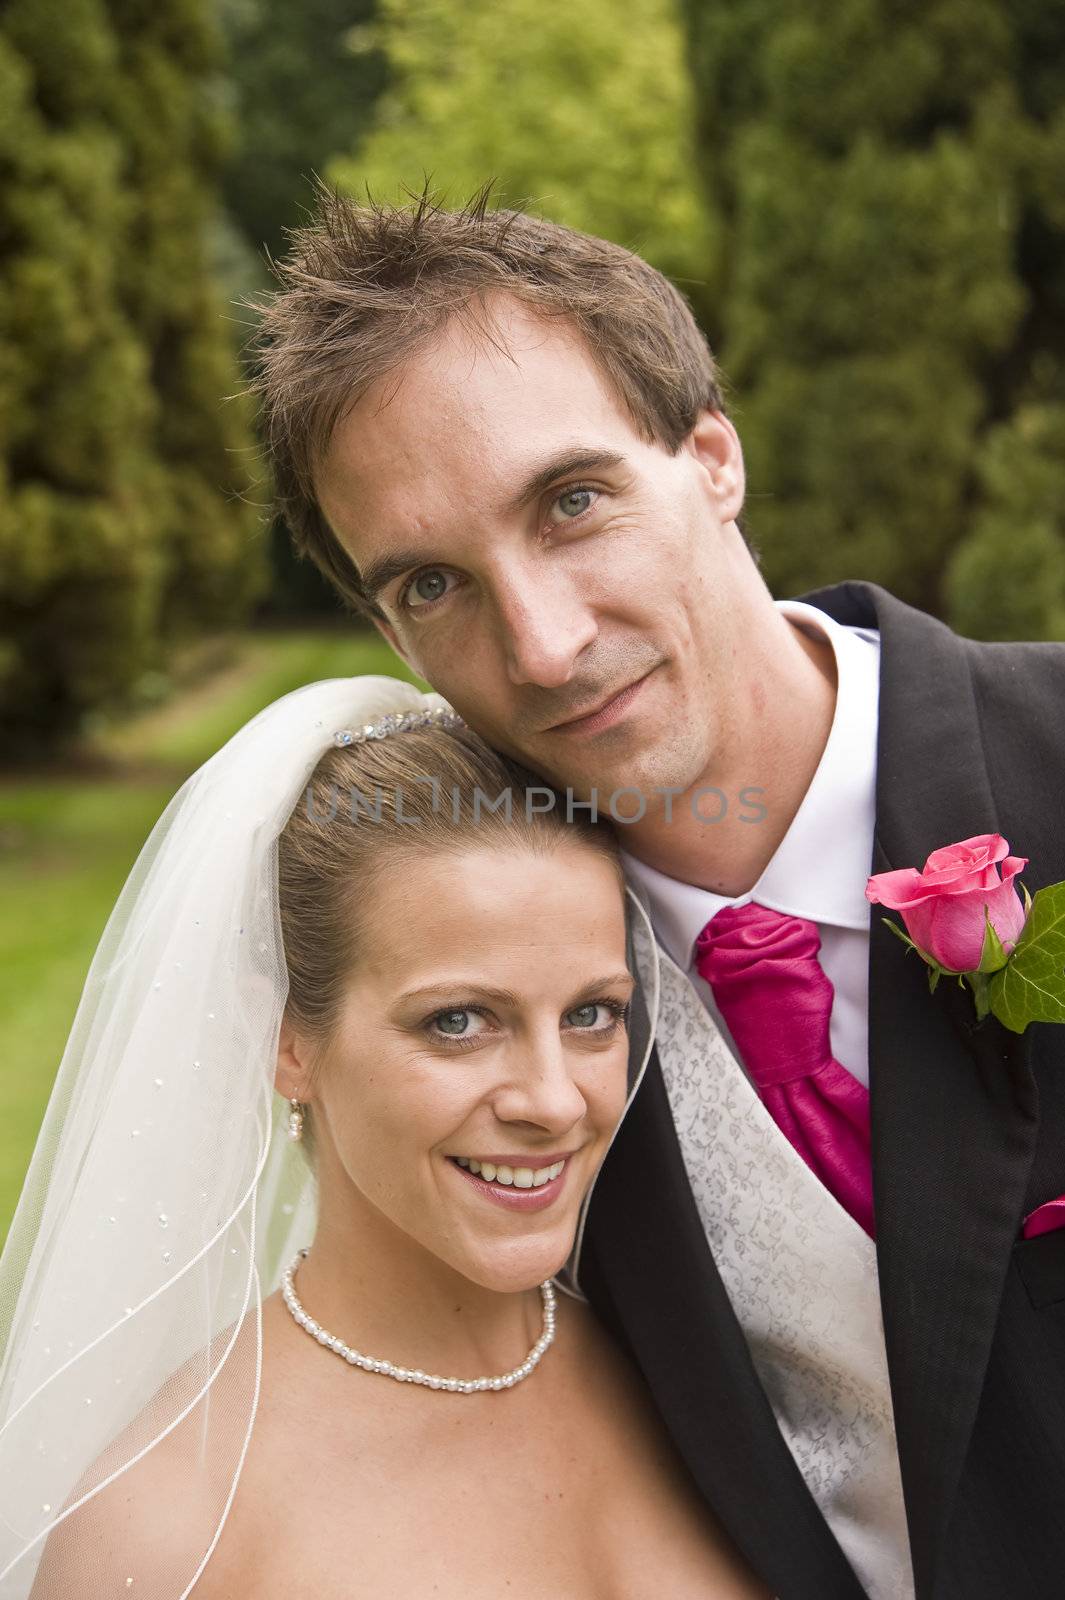 Attractive young bride and groom wedding portrait by Veneratio